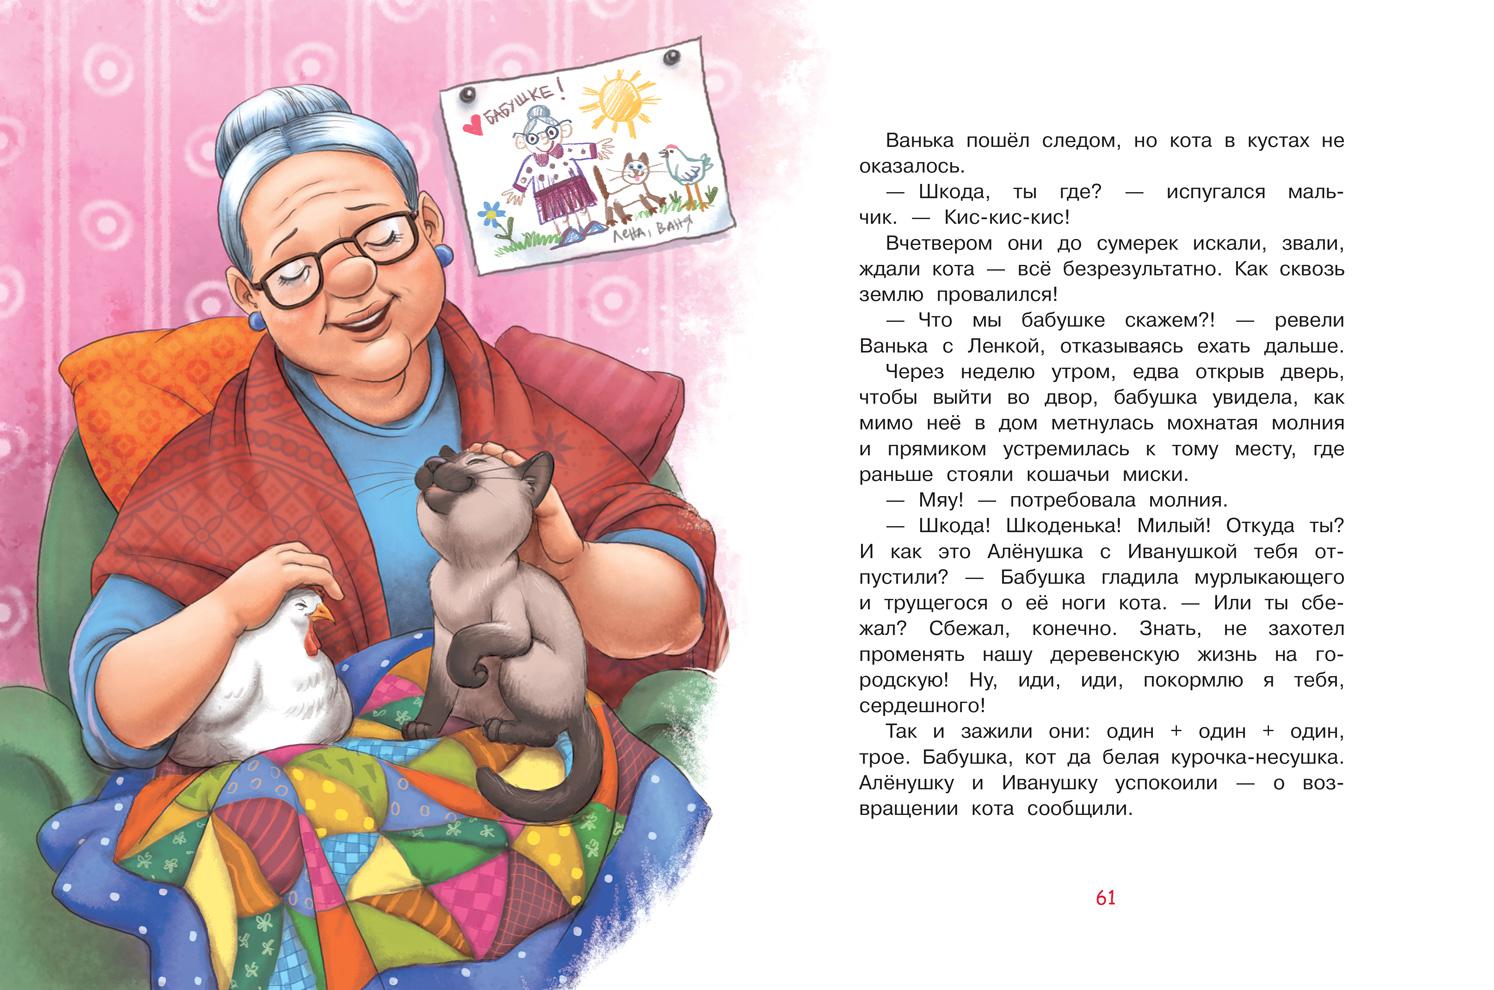 Рассказ о жизни бабушки. Рассказ про бабушку. Hfpprfp j ,f,EIRT. Истории бабушки. Небольшой рассказ о бабушке.